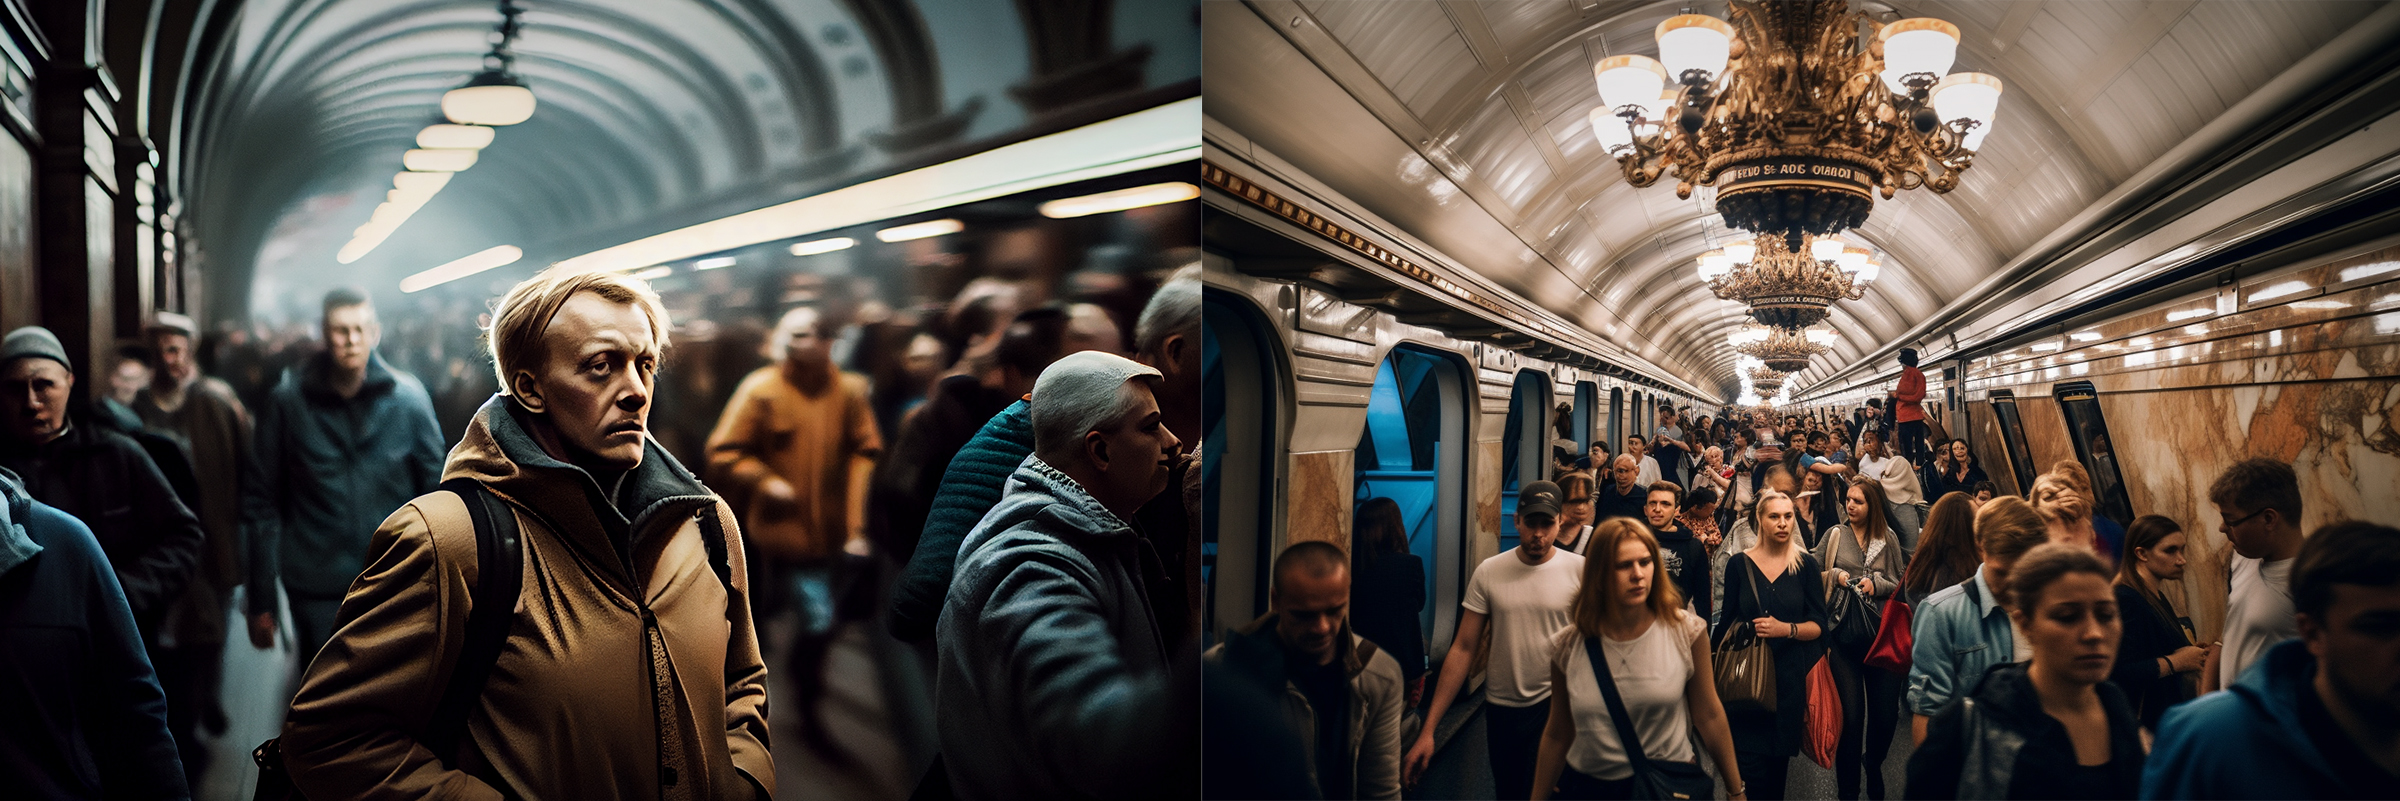 Фото из оживленного московского метро